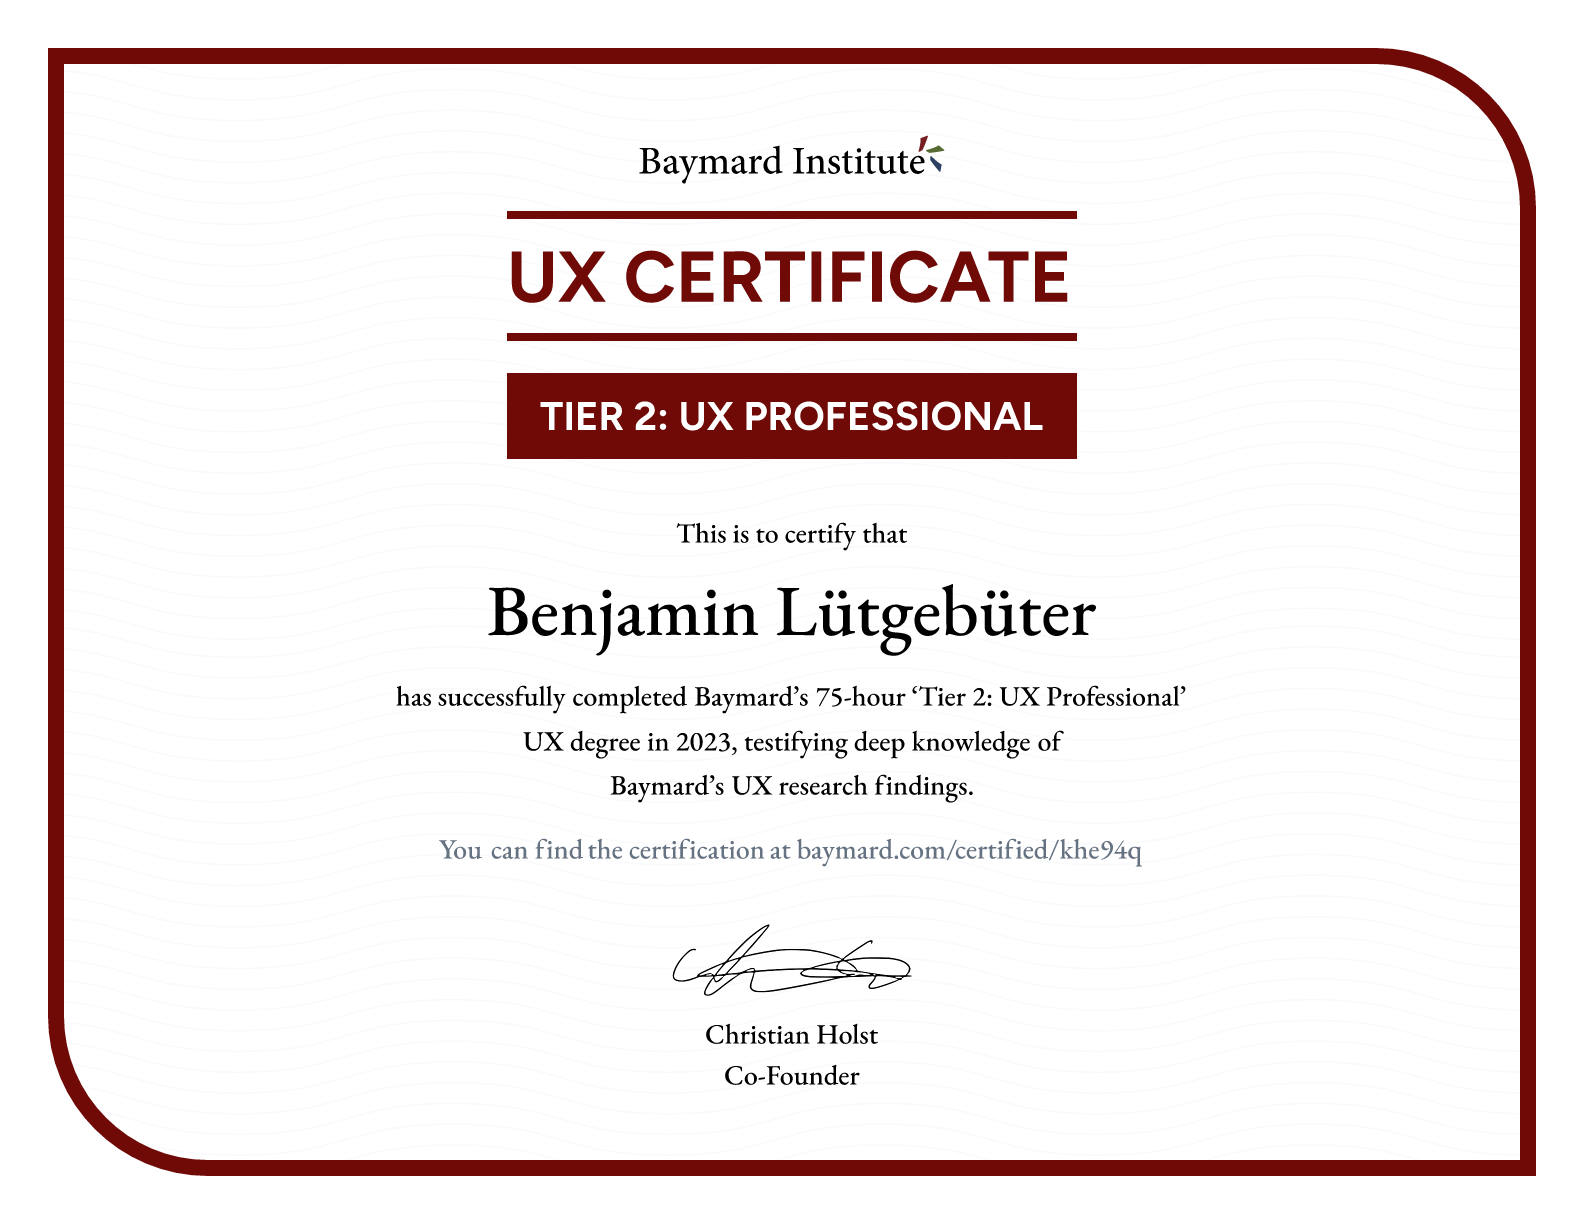 Benjamin Lütgebüter’s certificate